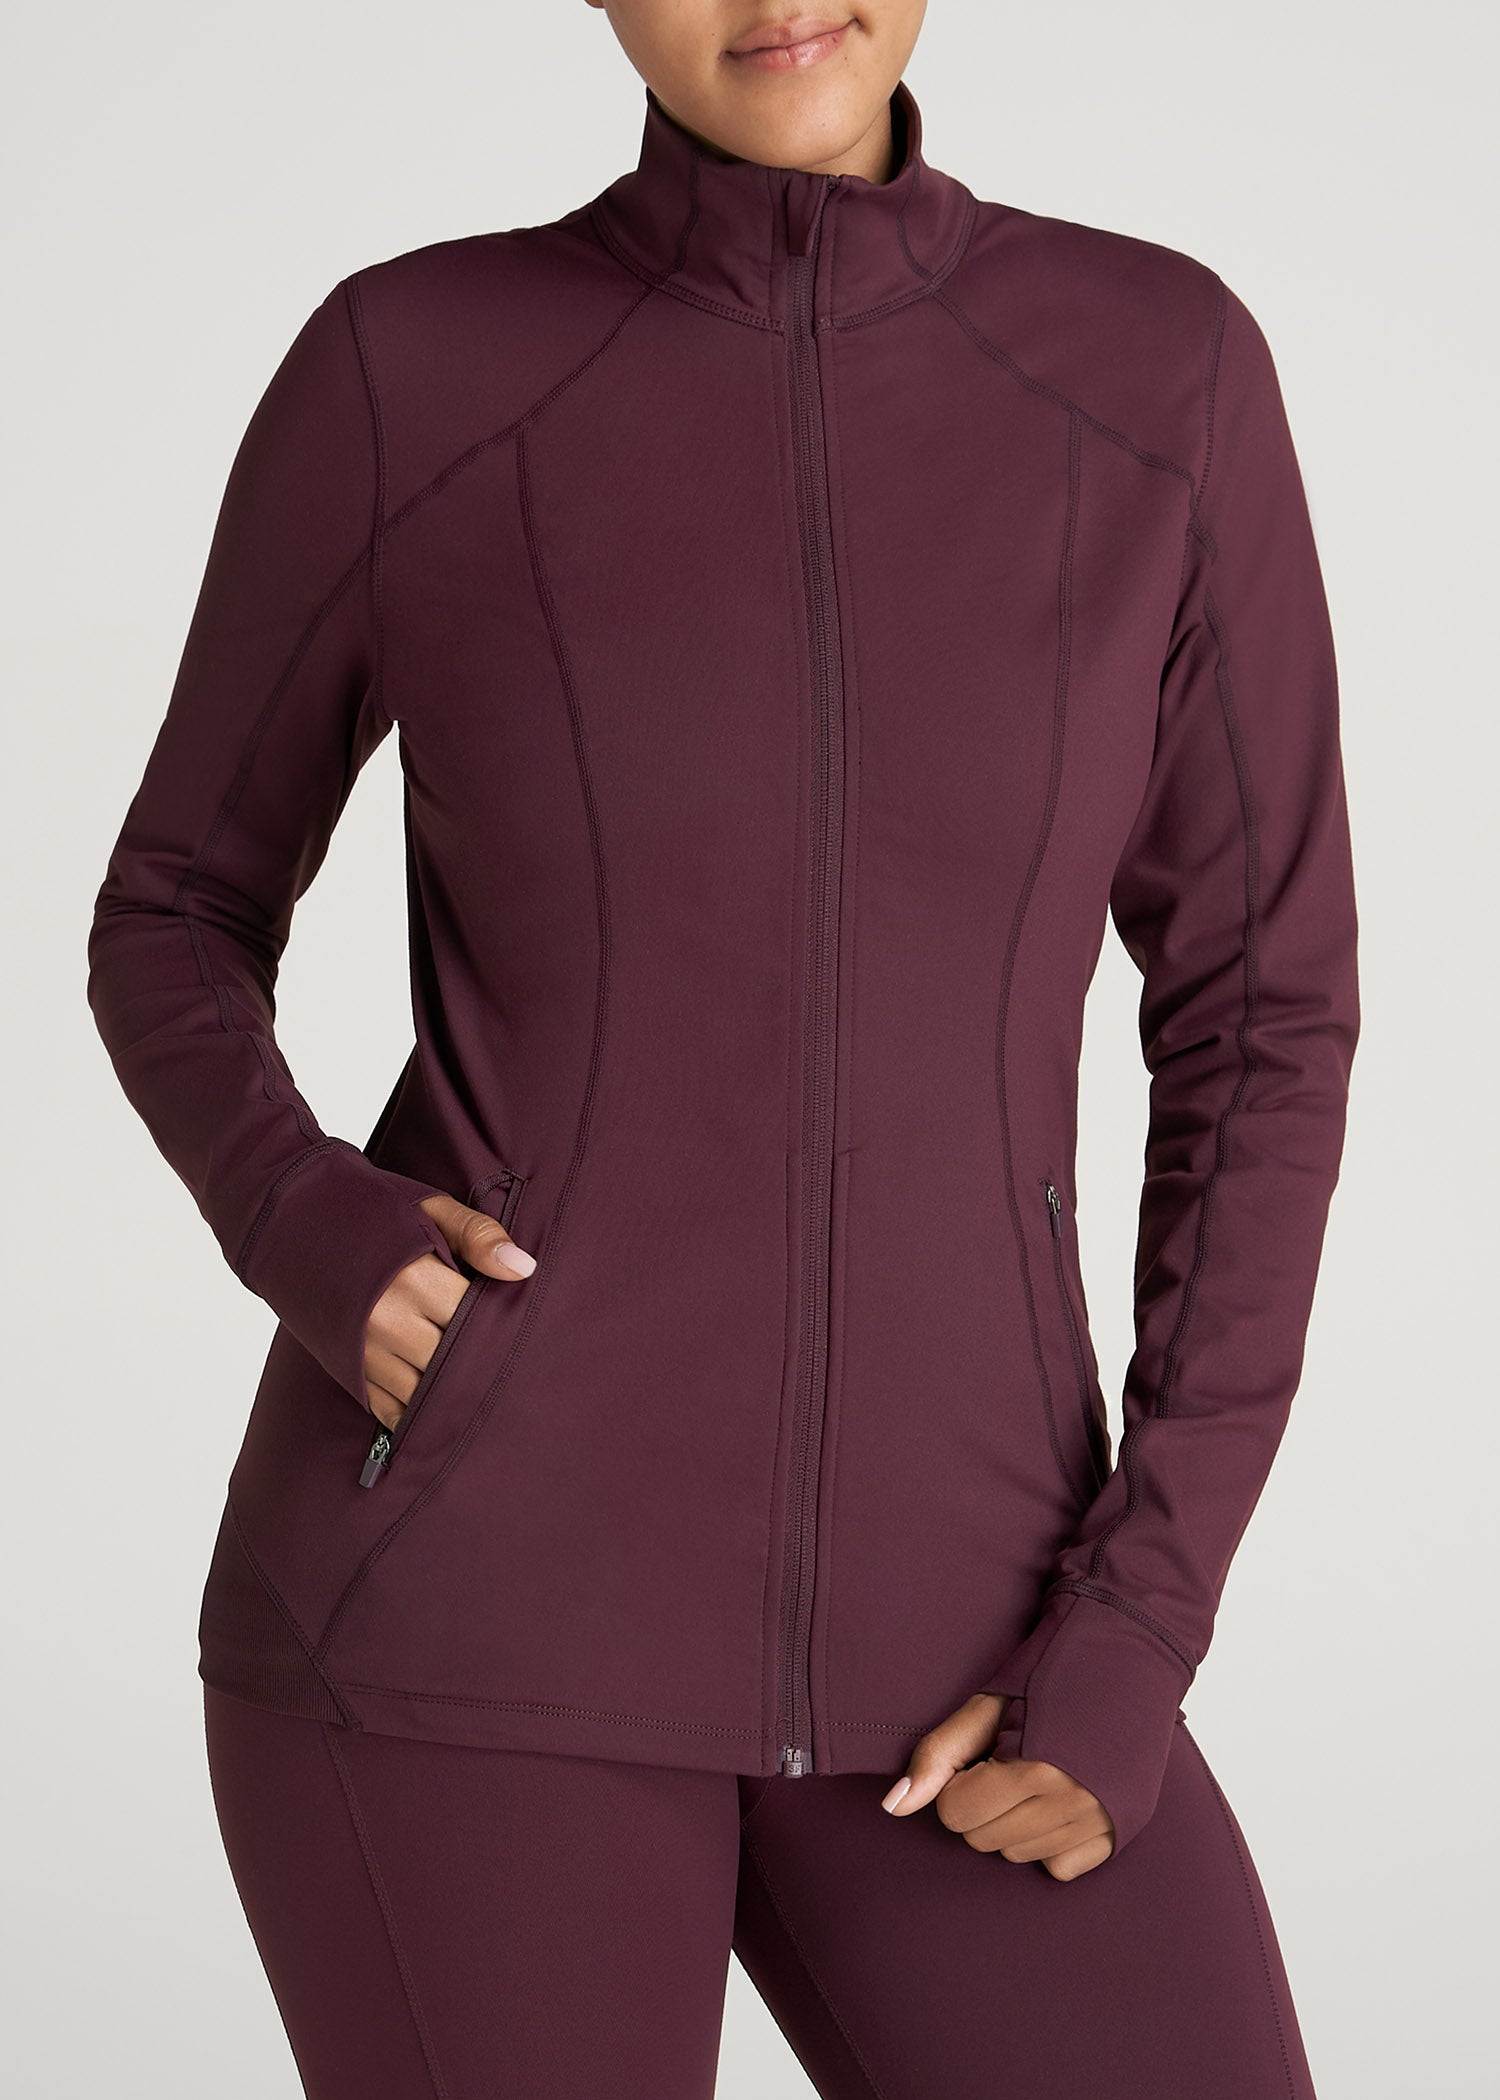 Women's Athletic Zip-Up Jacket in Beetroot